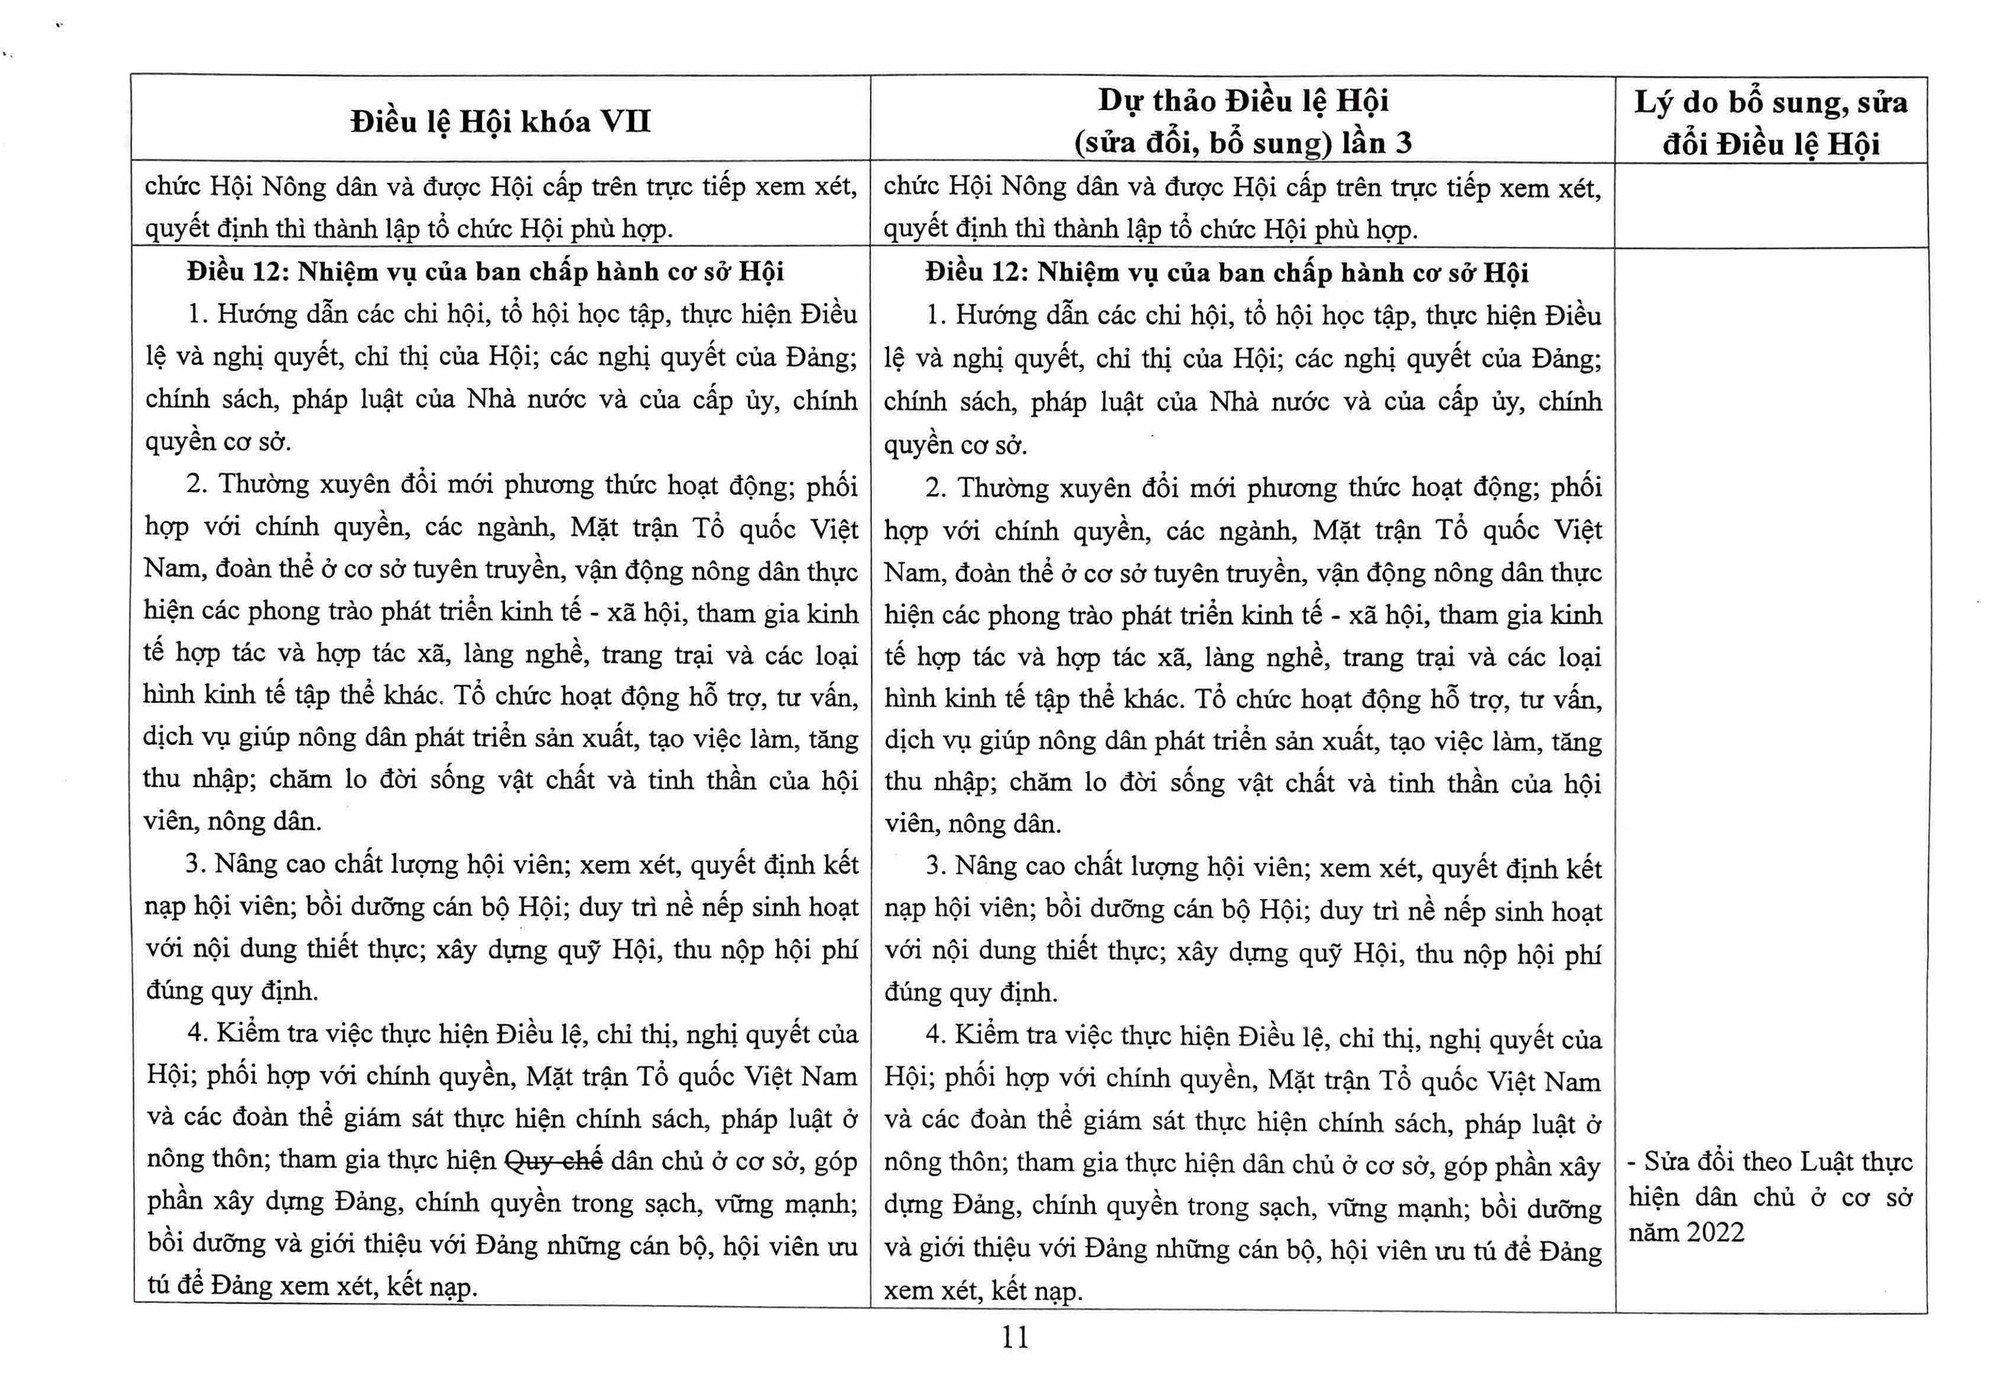 Toàn văn Dự thảo Điều lệ Hội Nông dân Việt Nam sửa đổi, bổ sung - Ảnh 11.